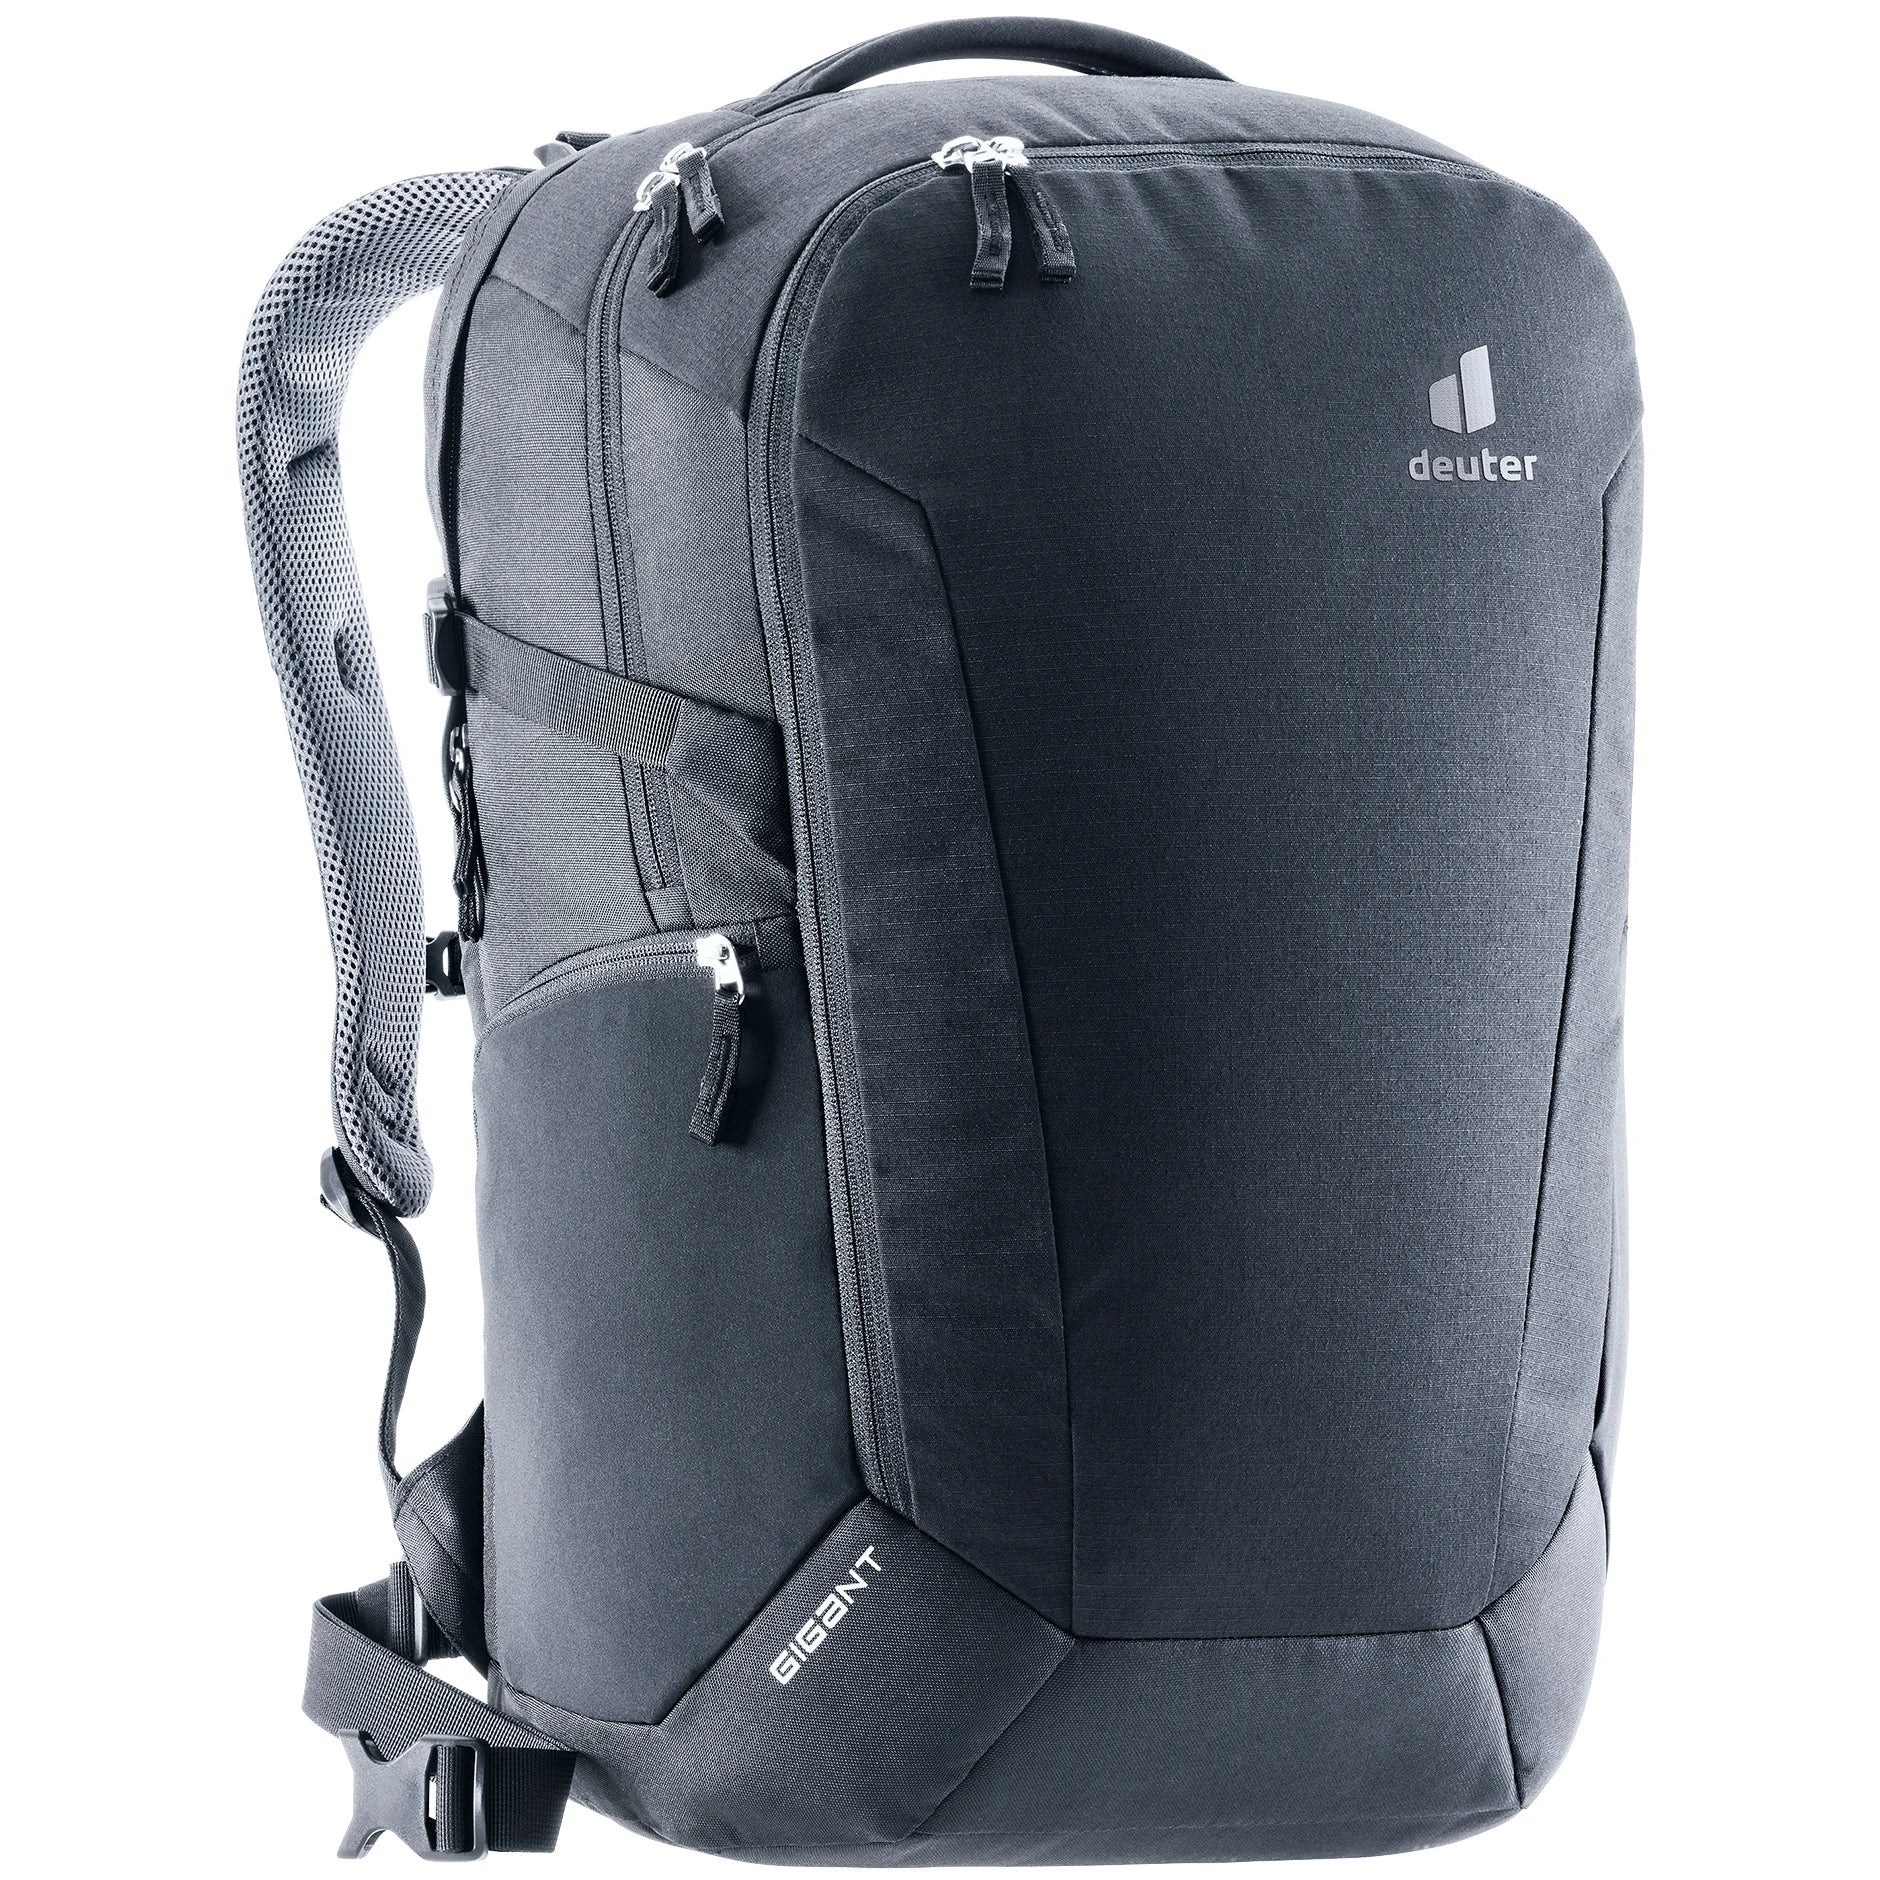 Deuter Daypack Gigant backpack 50 cm - Black2